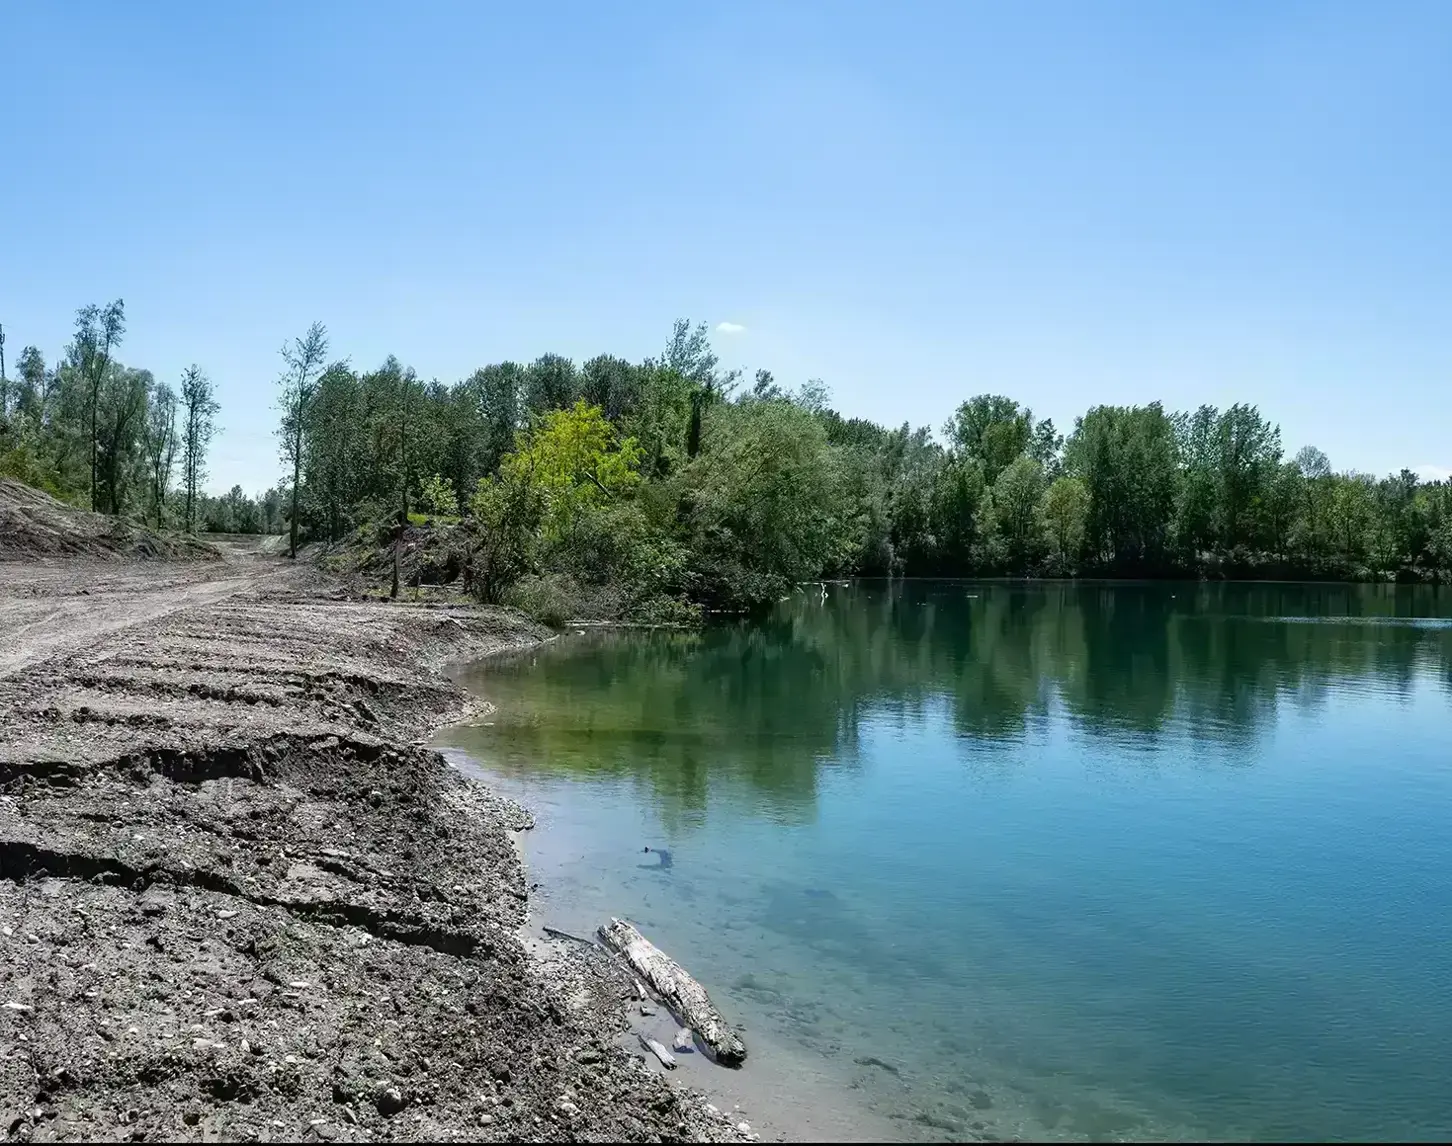 Ufer bei Abwinden-Asten: Das Ufer ist gesäumt von unterschiedlichen großen Bäumen und man sieht auf der linken Seite bereits erste Spuren der Baustelle.